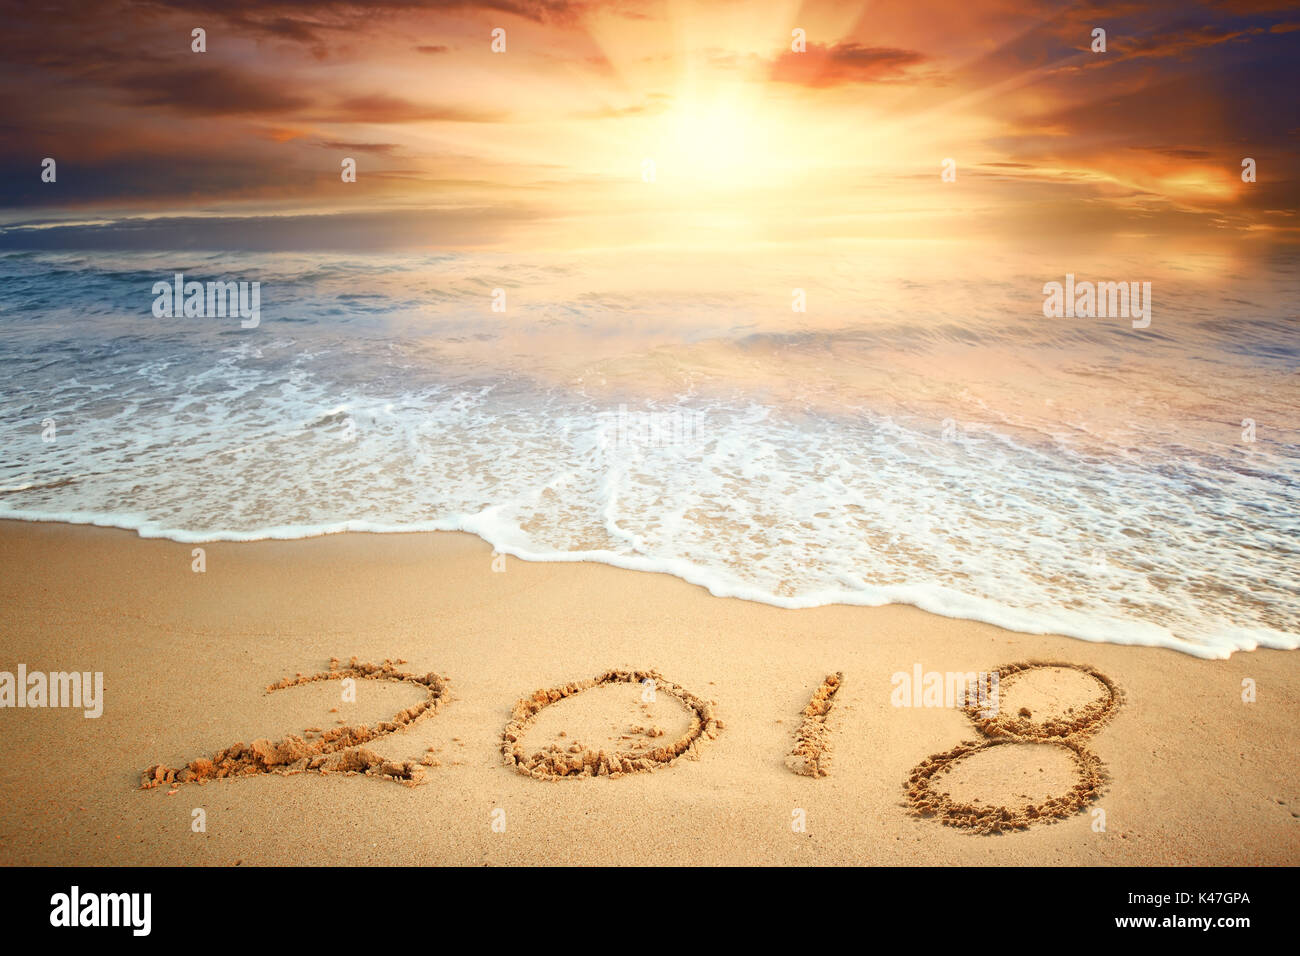 Year 2018 written on sand at sunrise Stock Photo